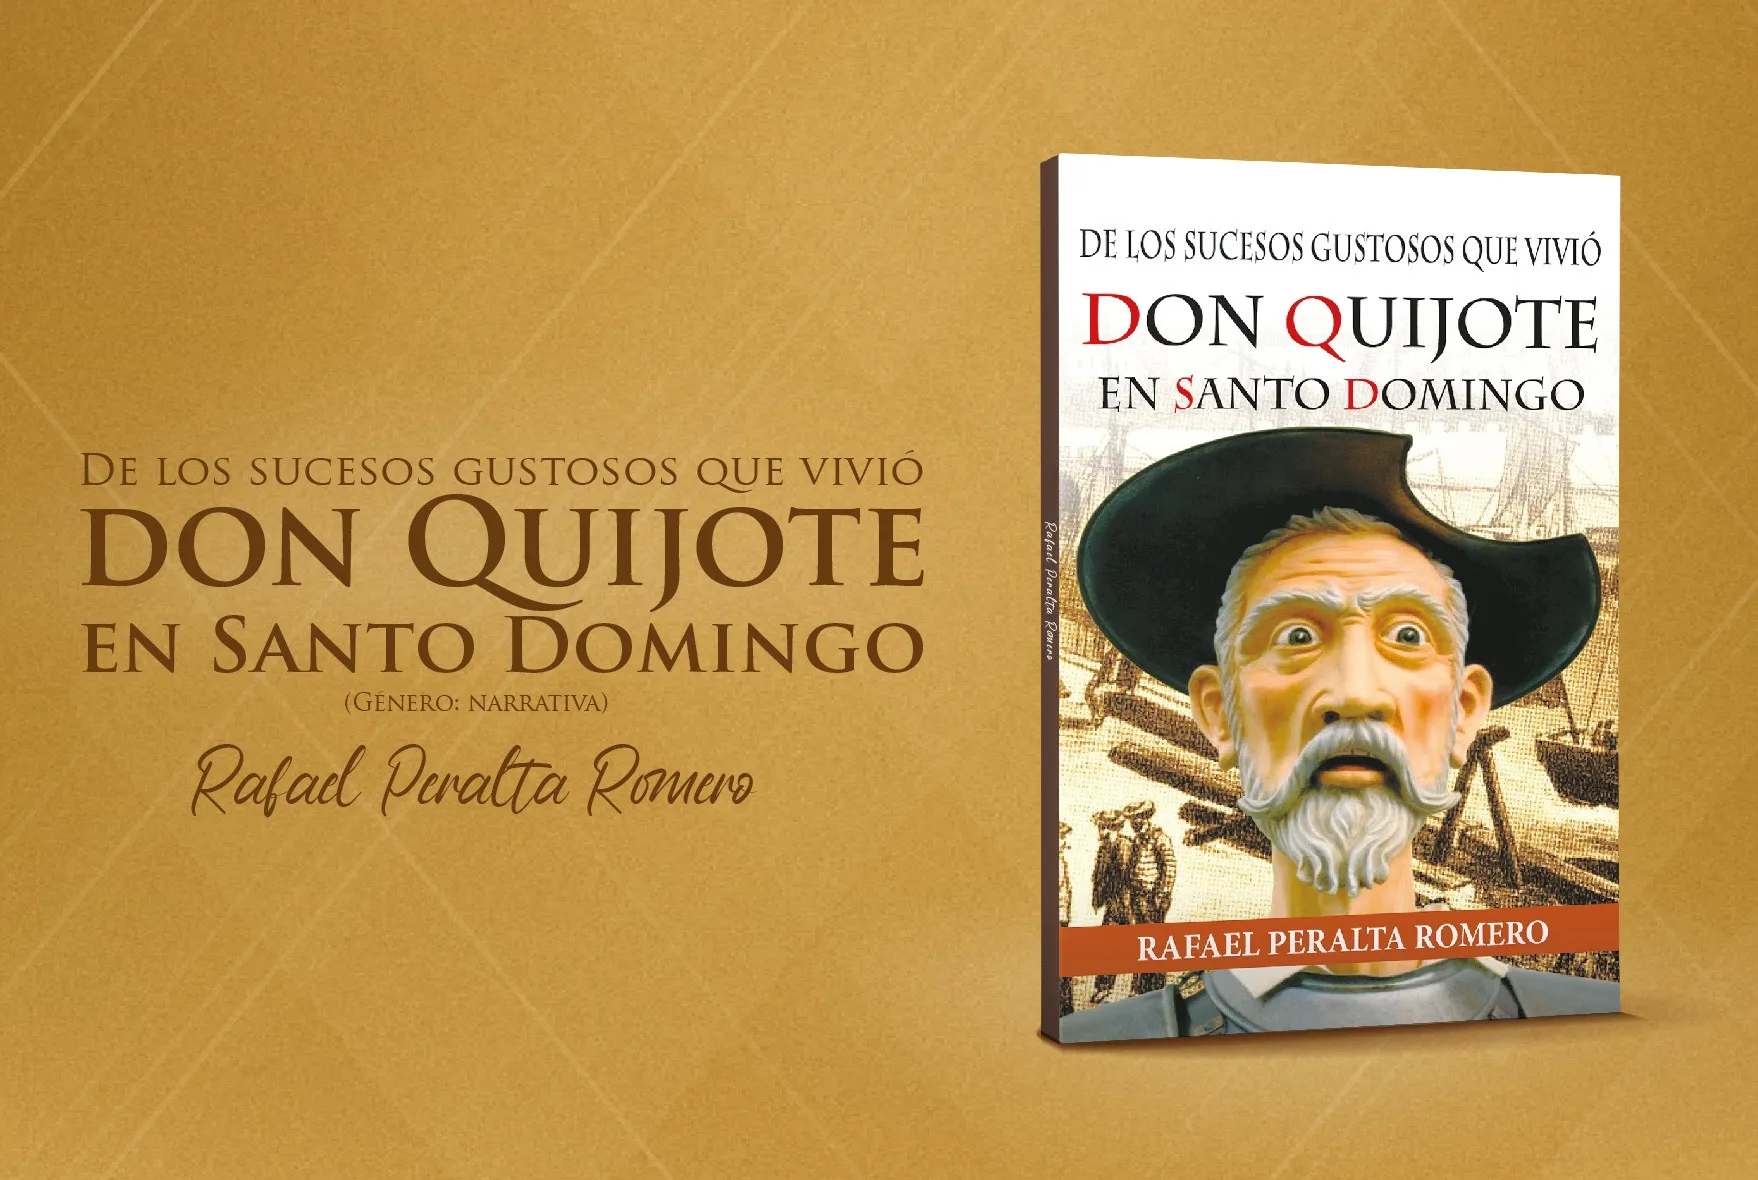 “De los sucesos gustosos que vivió Don Quijote en Santo Domingo”